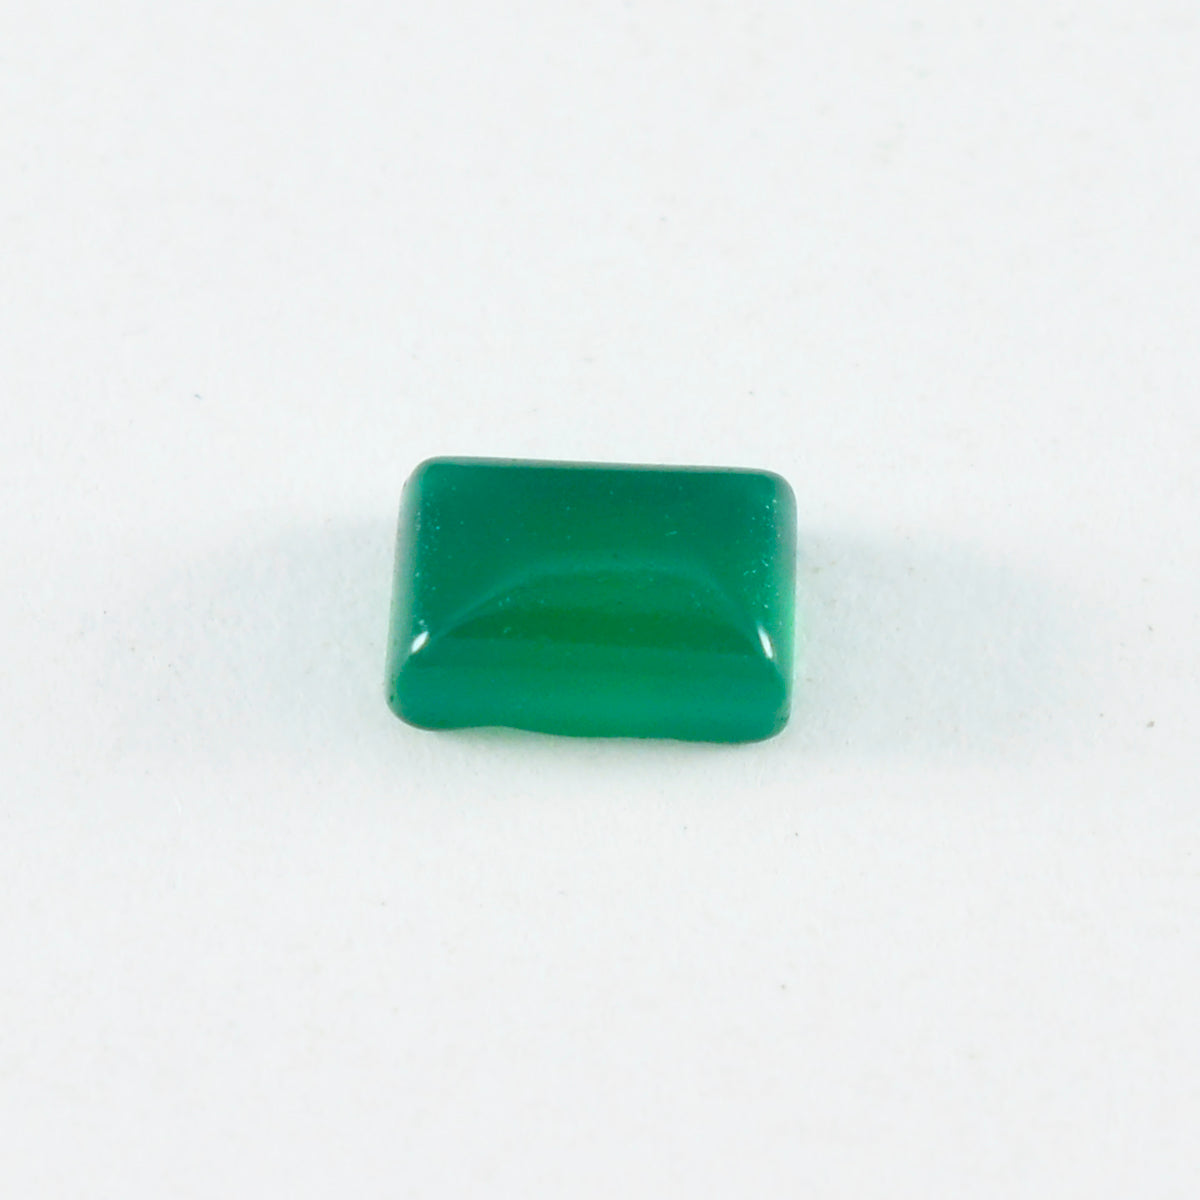 Riyogems 1PC groene onyx cabochon 8x10 mm achthoekige vorm mooie kwaliteit losse edelsteen